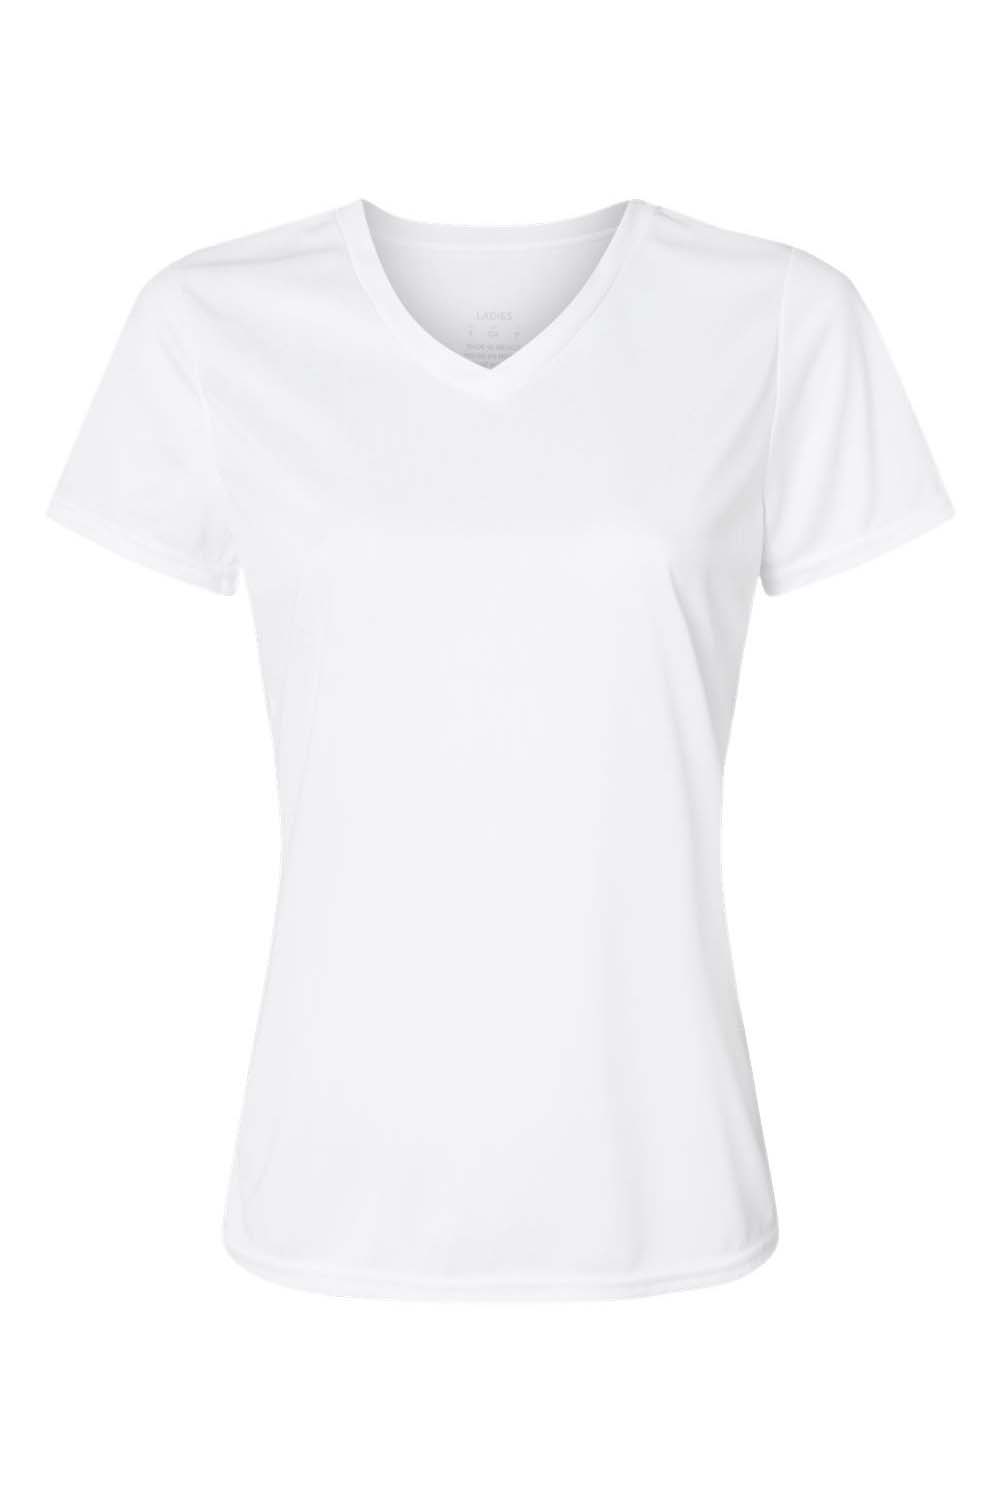 Augusta Sportswear 1790 Womens Moisture Wicking Short Sleeve V-Neck T-Shirt White Model Flat Front